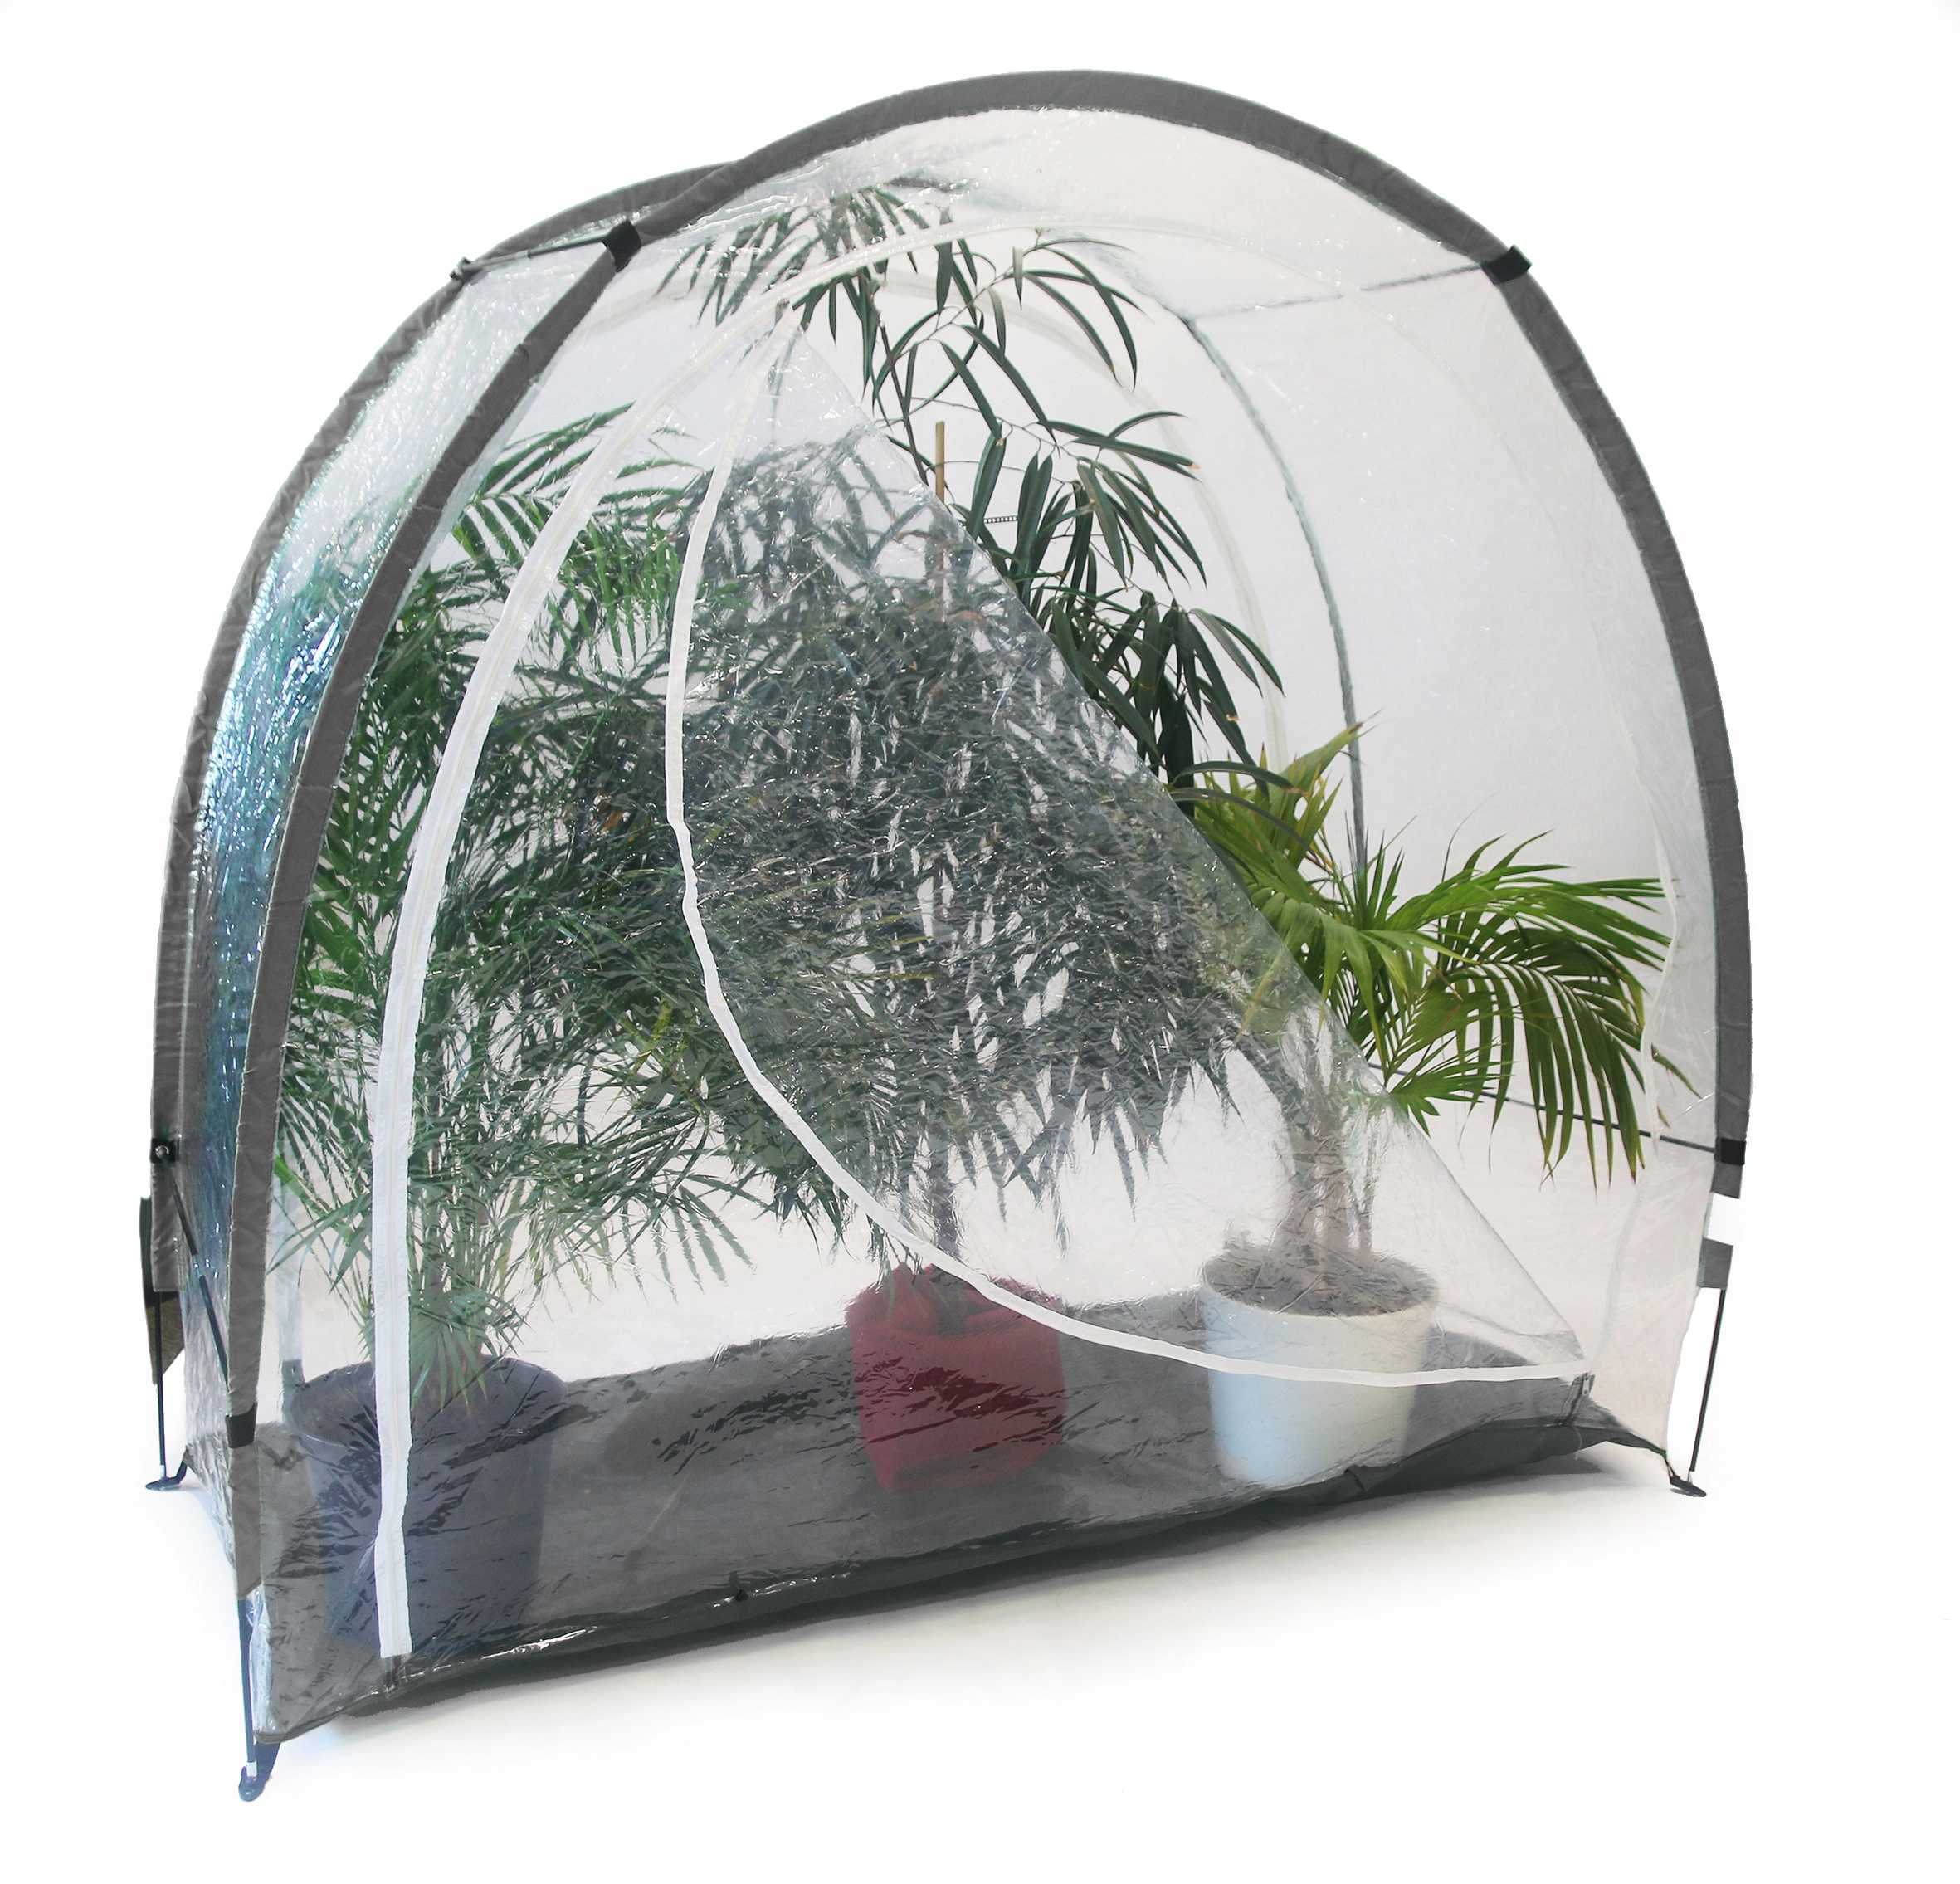 Winterschutz- und Frostschutz-Zelt ICE transparent kaufen bei OBI